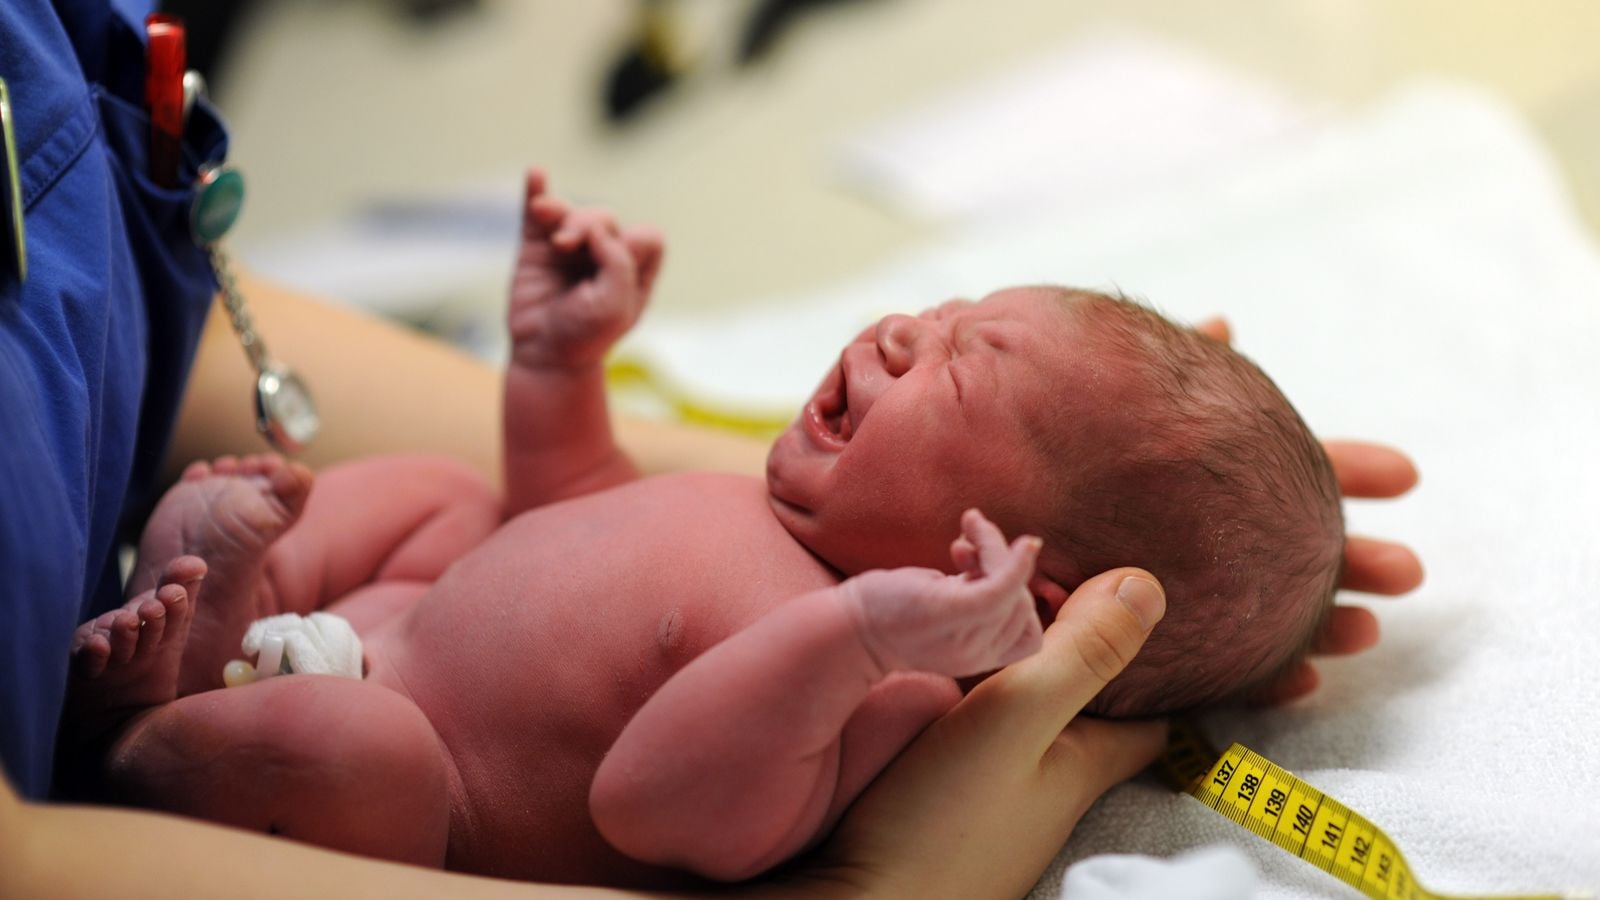 newborn being measured after birth